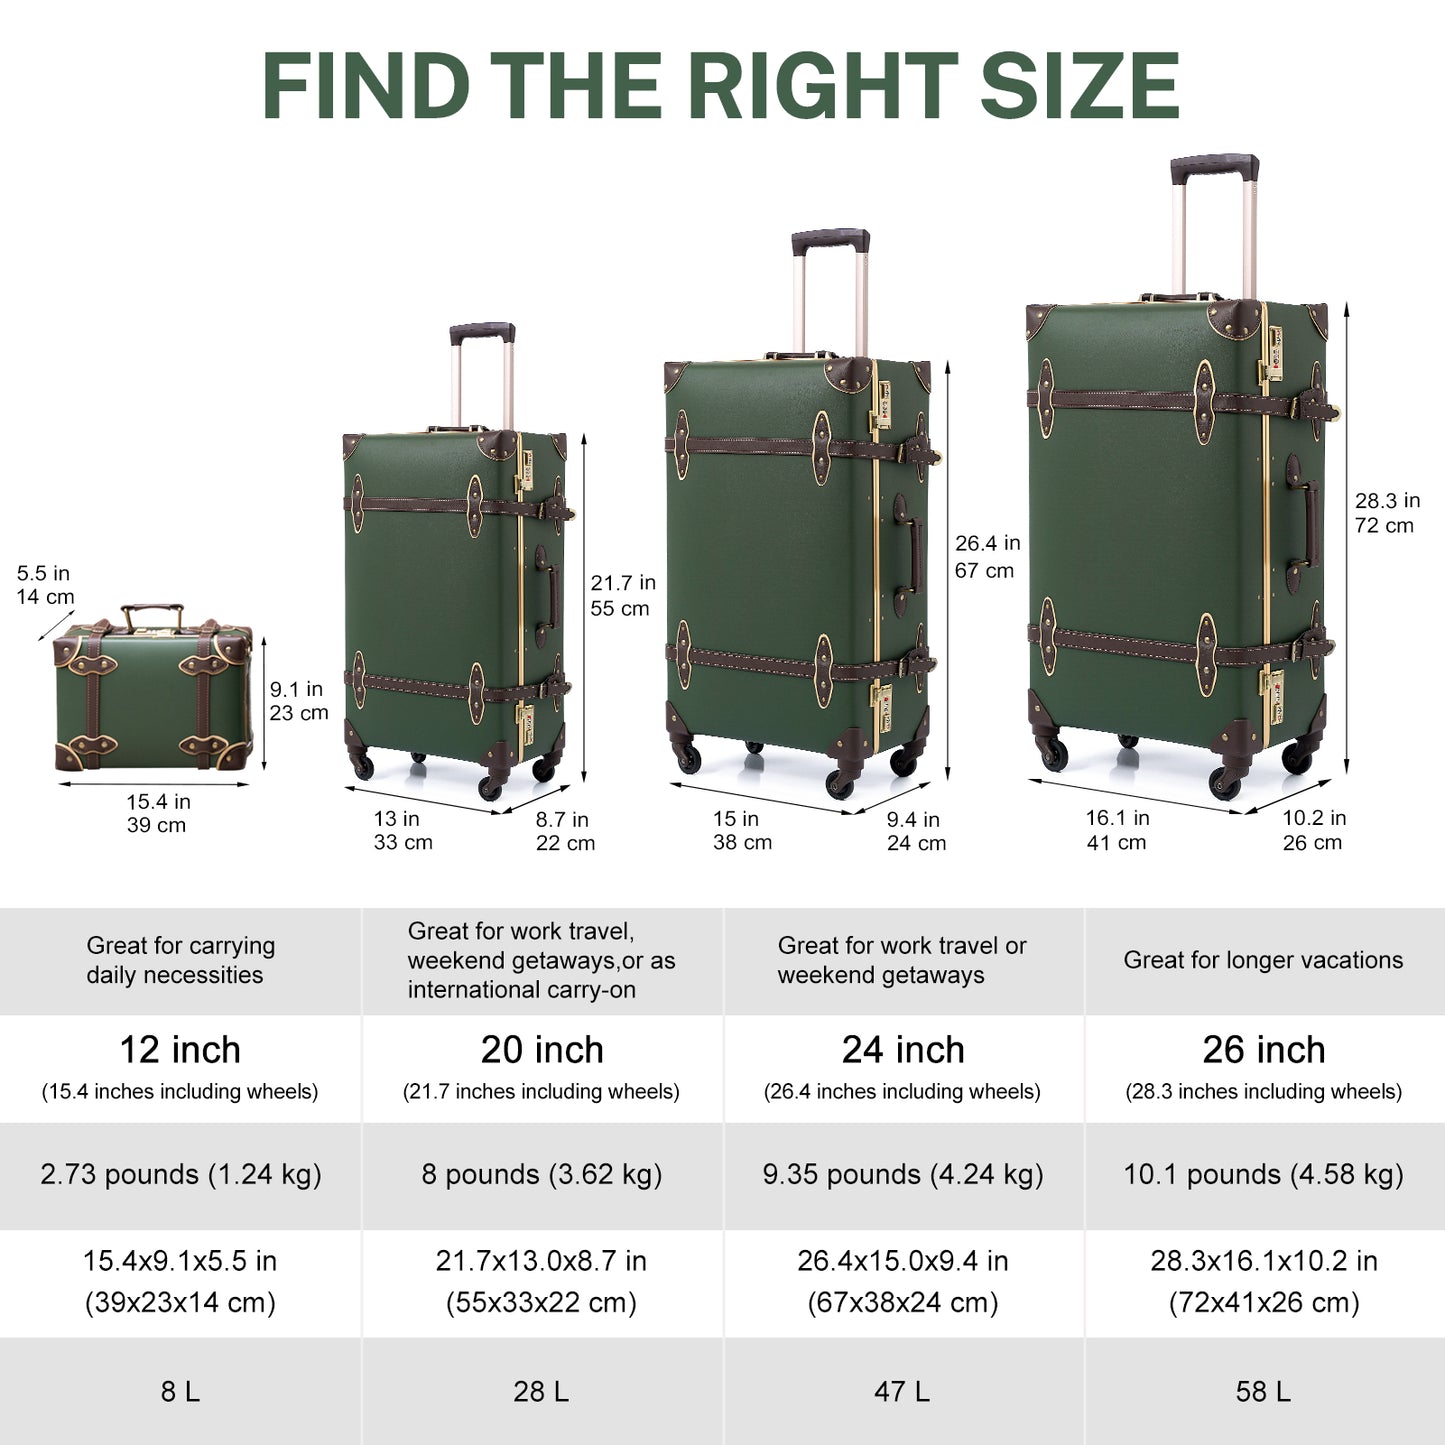 Urecity ヴィンテージ ラゲッジセット - トラベルスーツケース 2 点セット、PP+PVC 機内持ち込みおよびチェックイン可能なスーツケース、サイレント 360° スピナーホイール、20 インチと 26 インチのアーミーグリーン